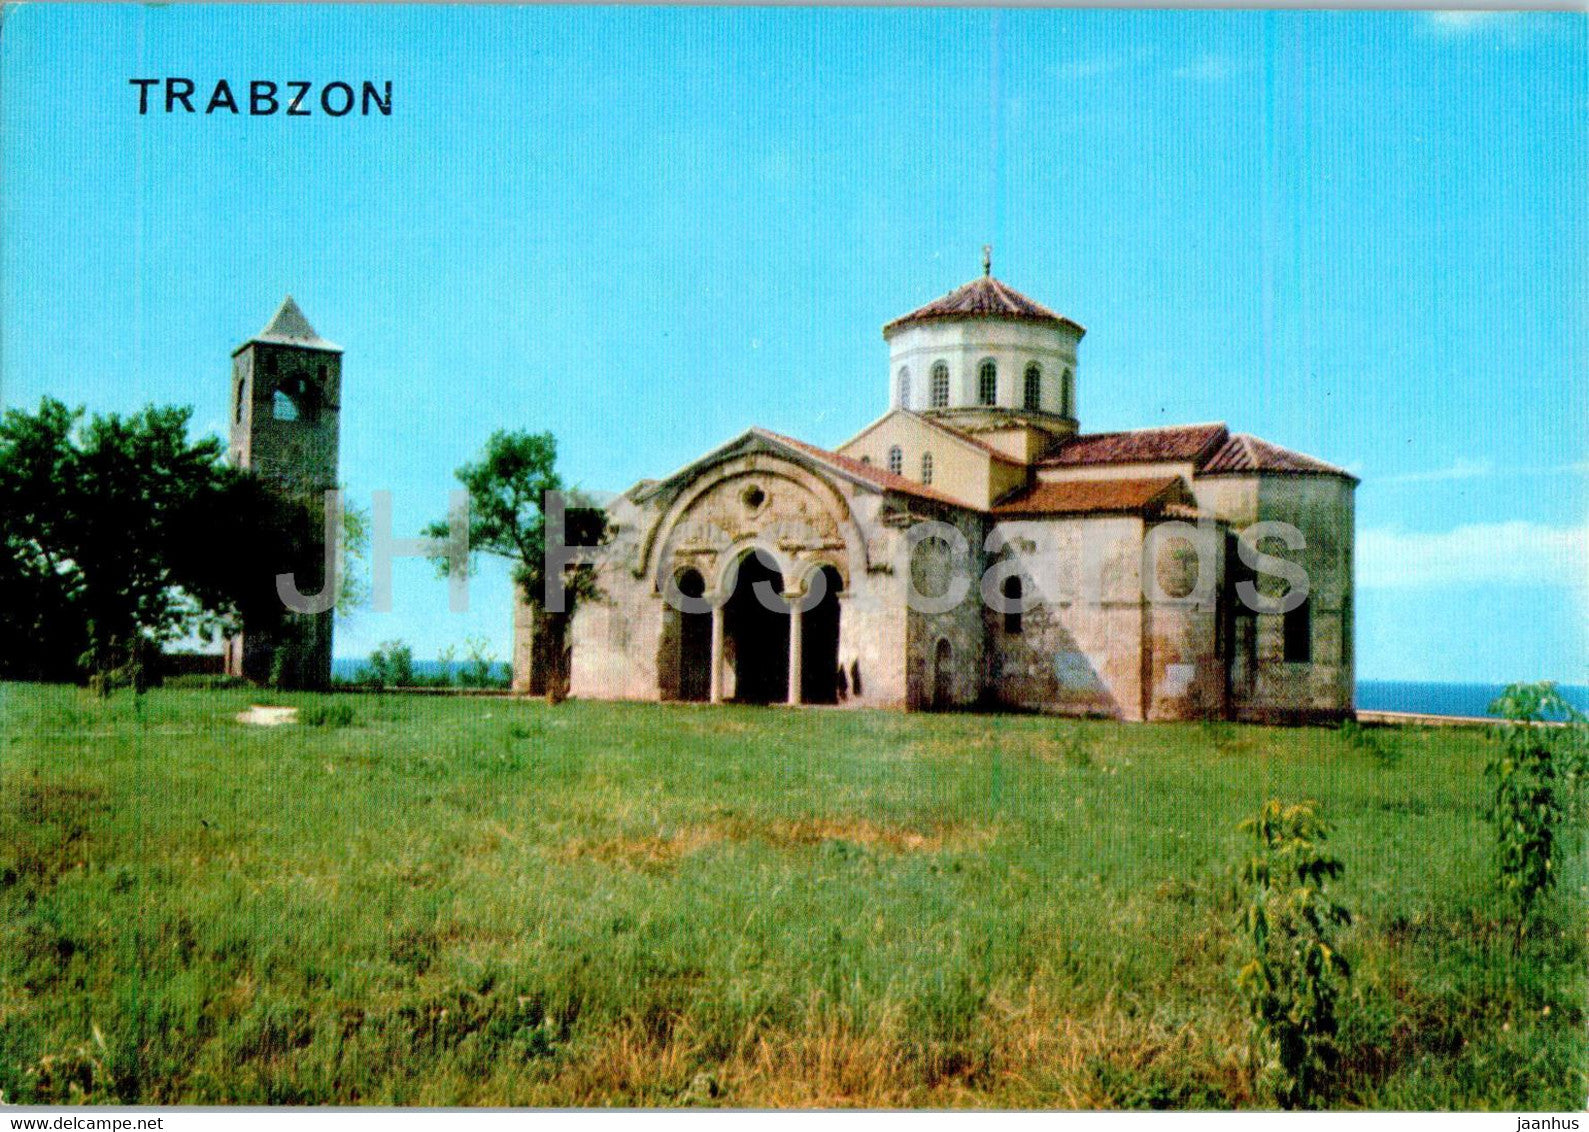 Trabzon - Haghia Sophia Museum - Turkey - unused - JH Postcards